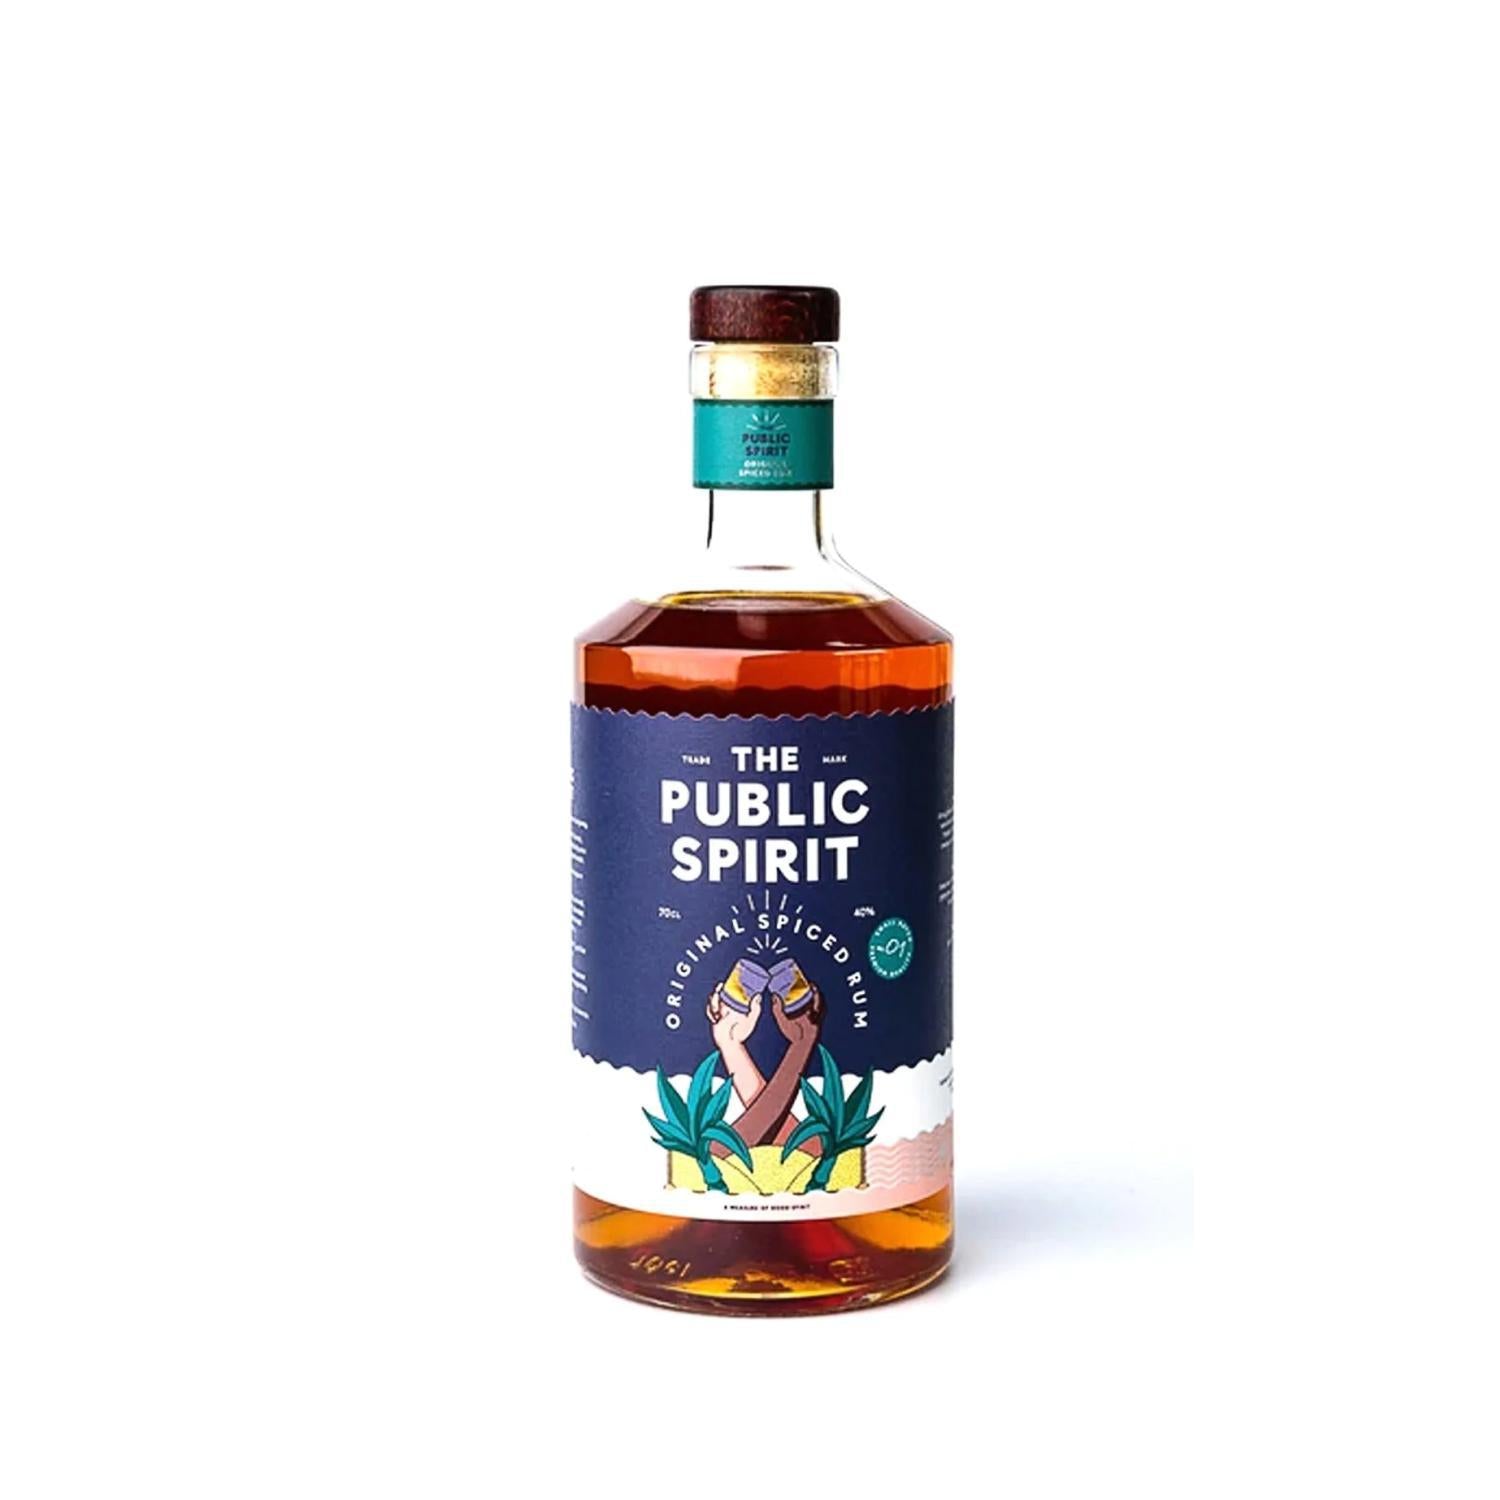 The Public Spirit - Original Spiced Rum